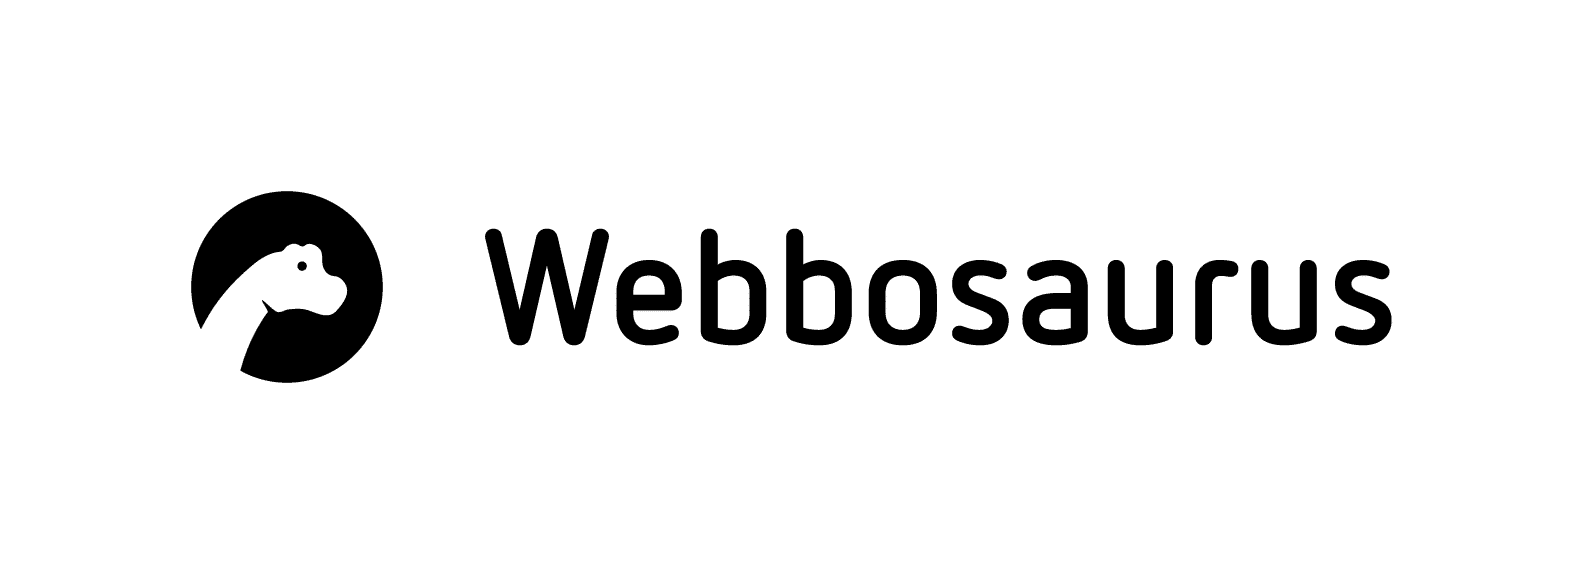 Webbosaurus